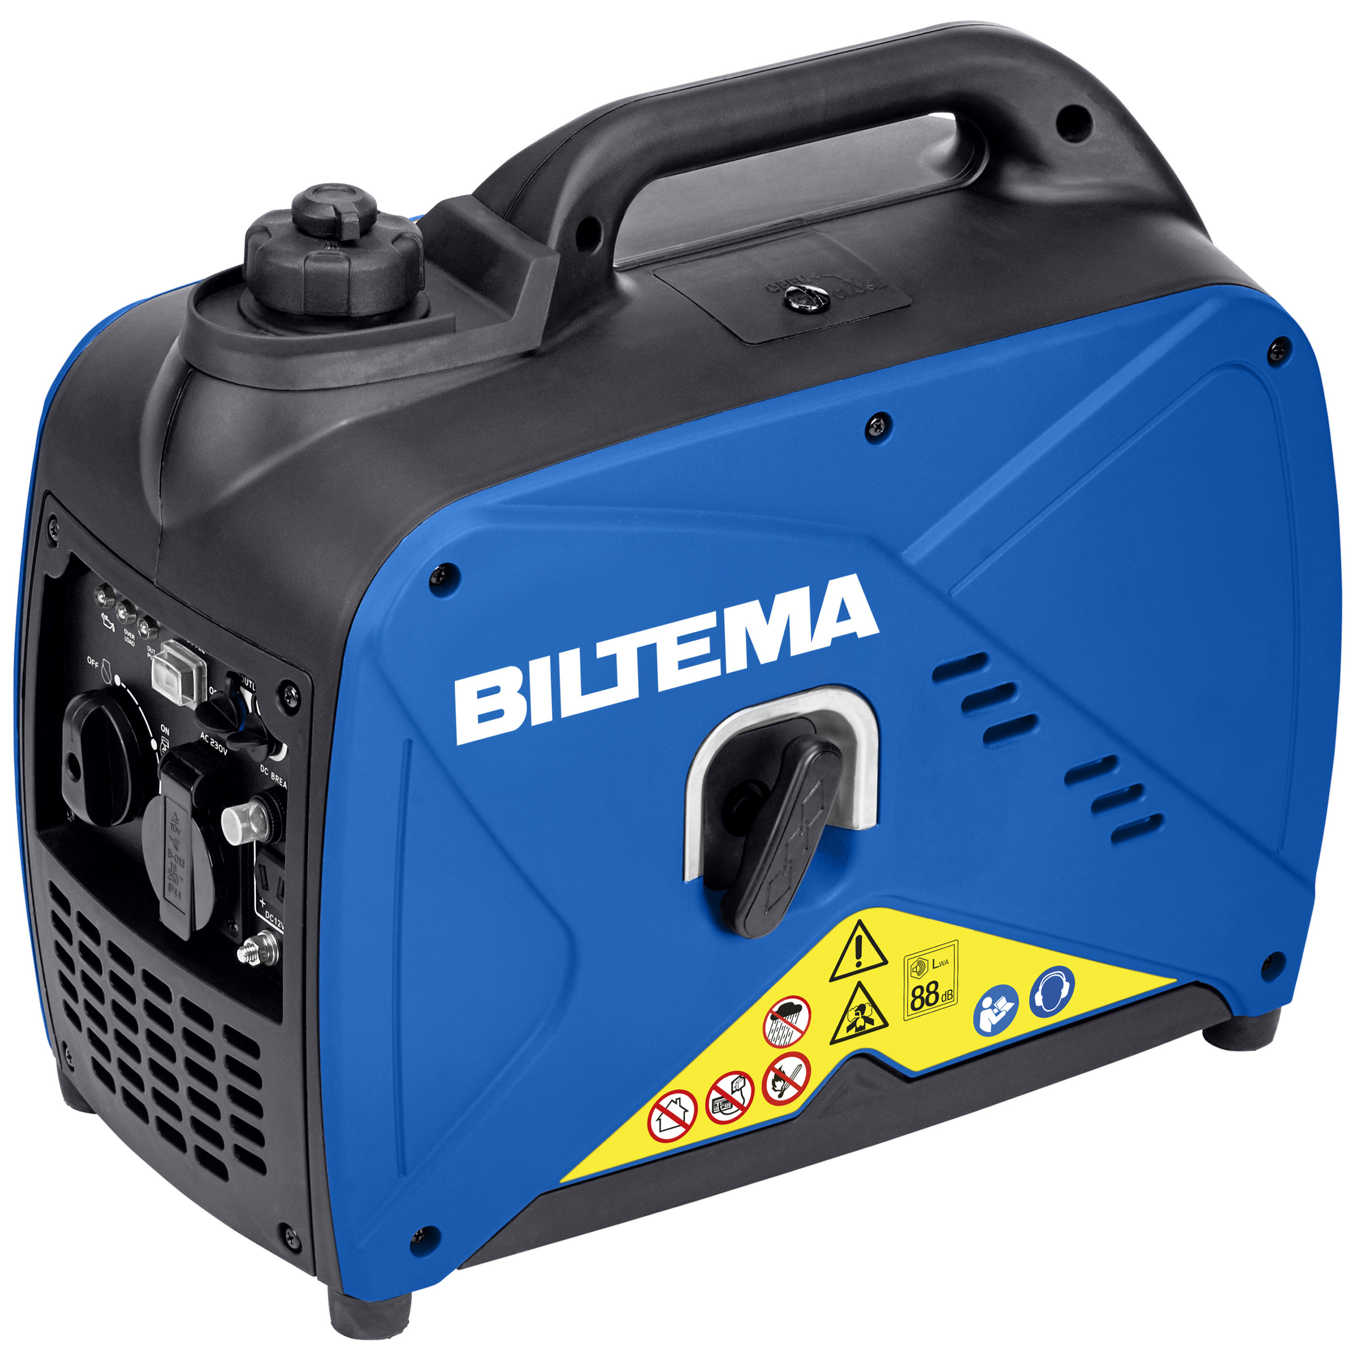 Характеристики генератор Biltema DG 1250is